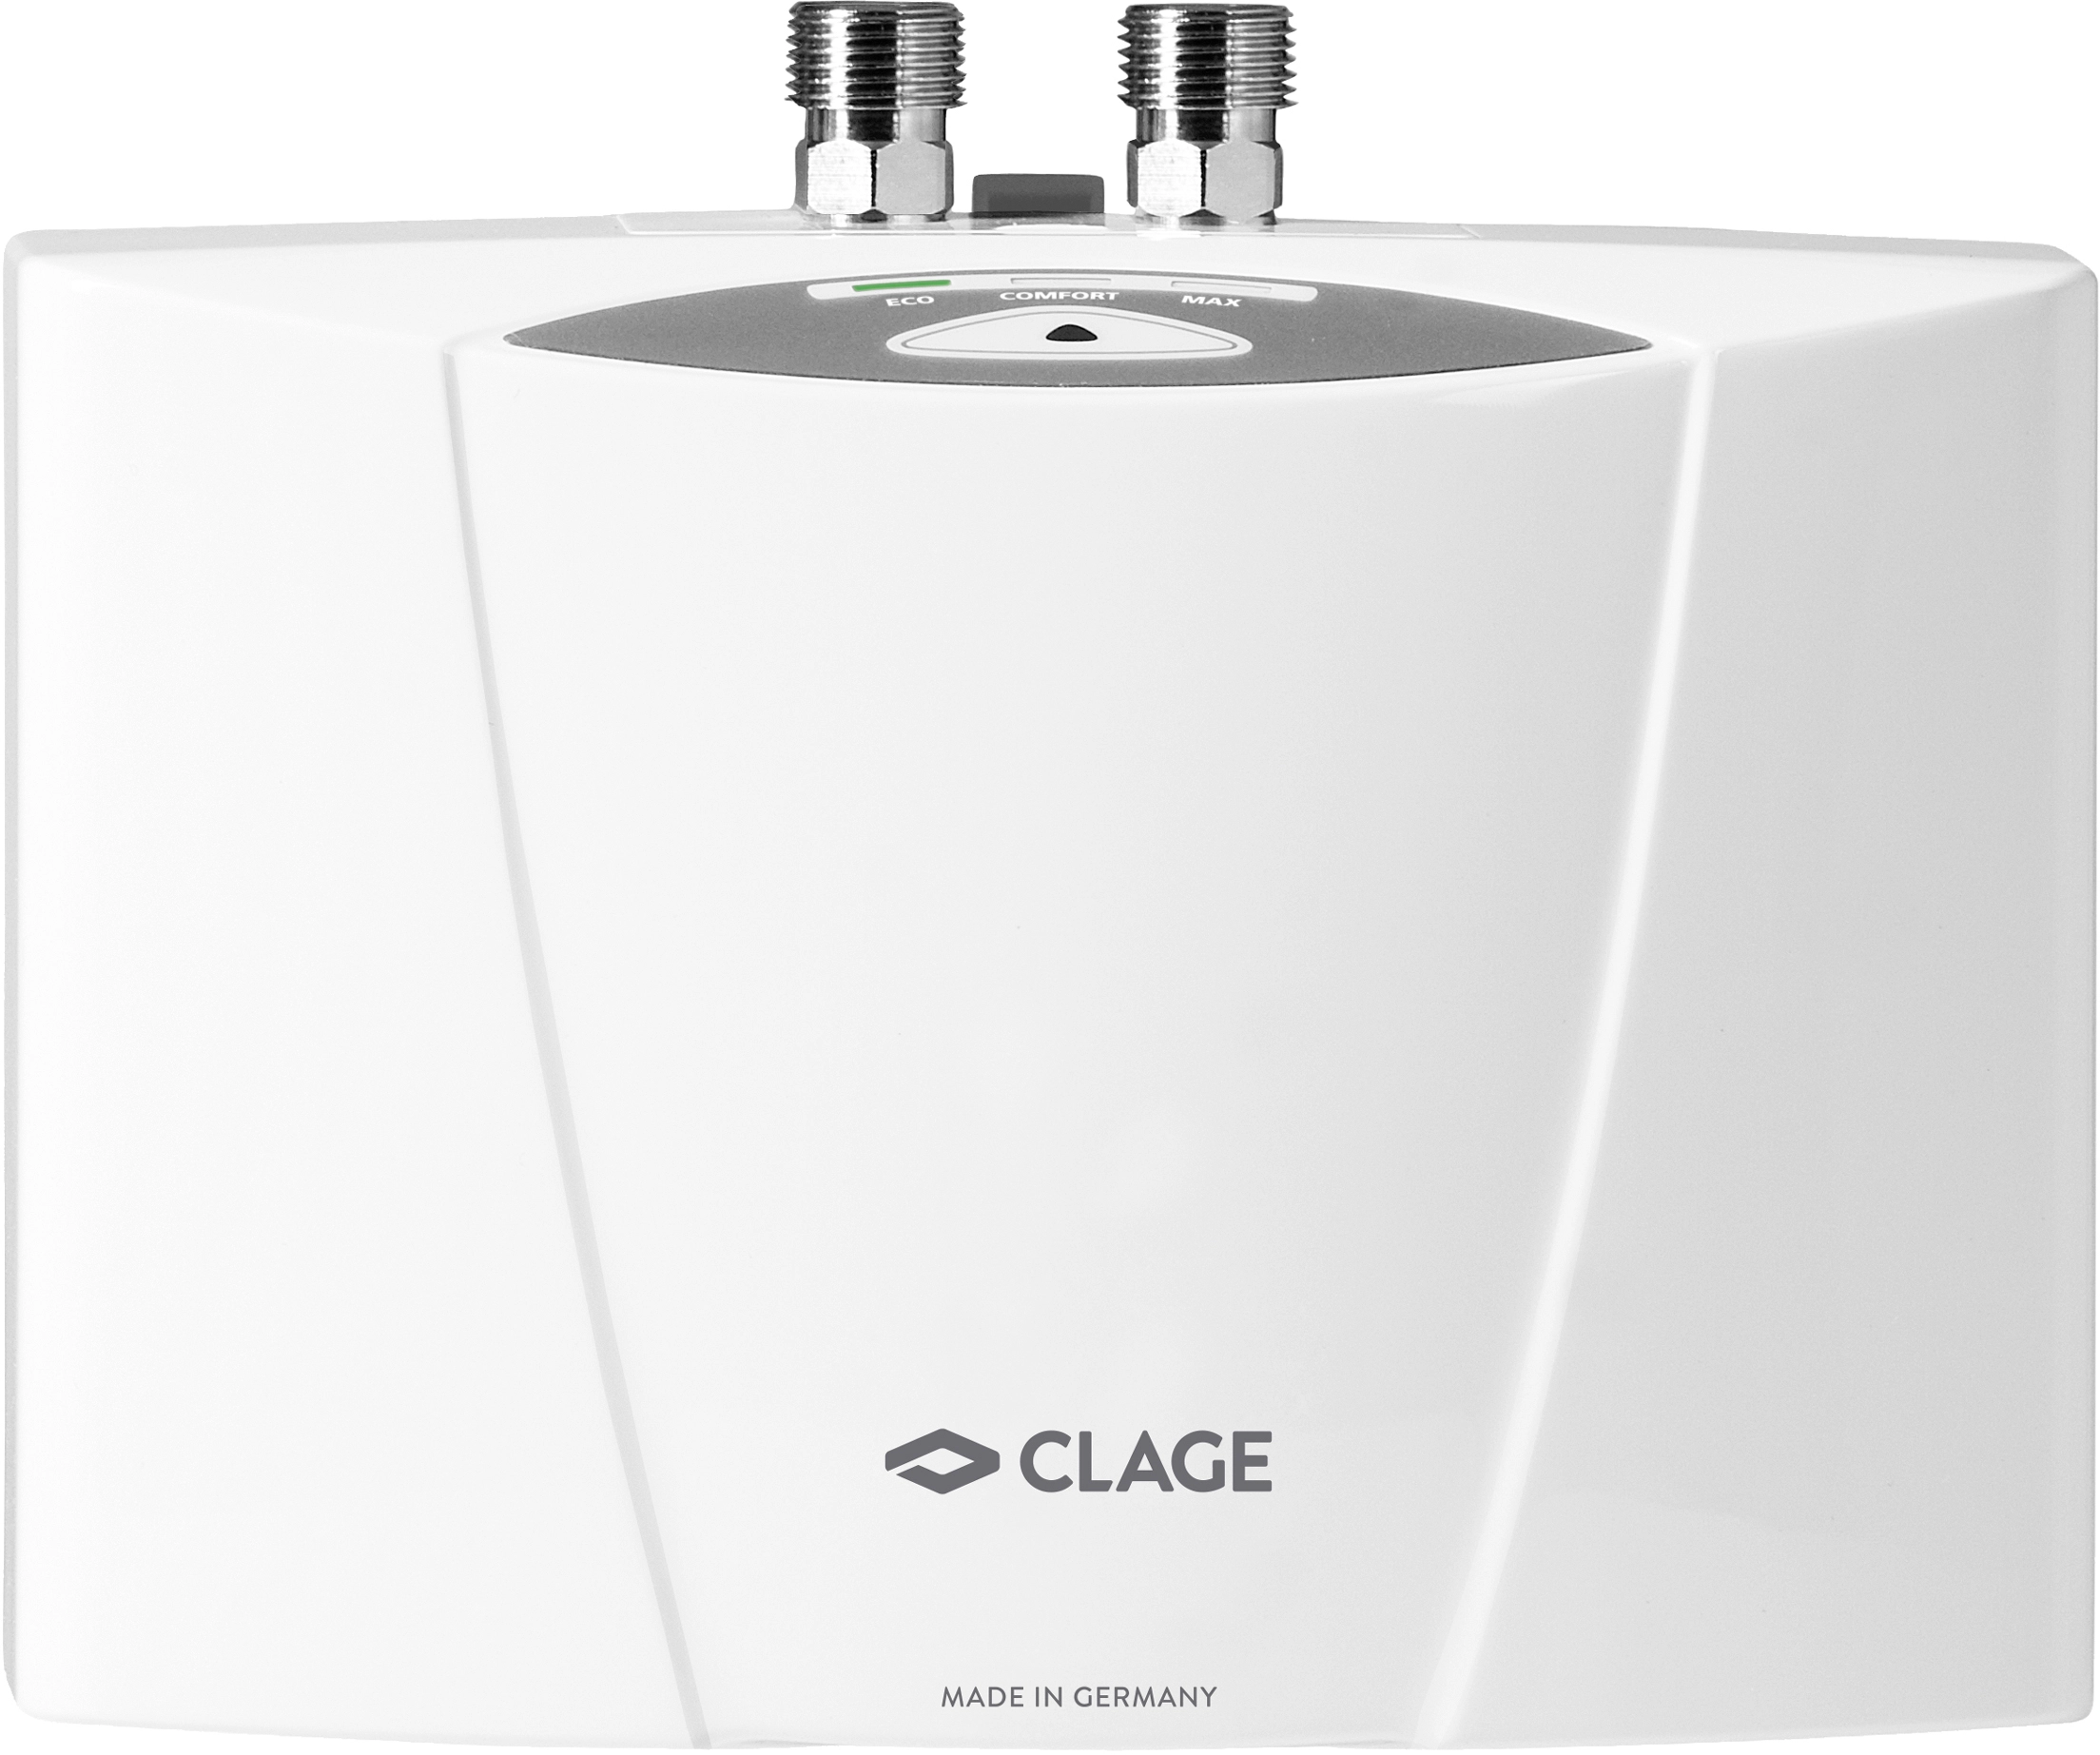 Clage MCX 7 elektronischer Klein-Durchlauferhitzer 6,5 kW